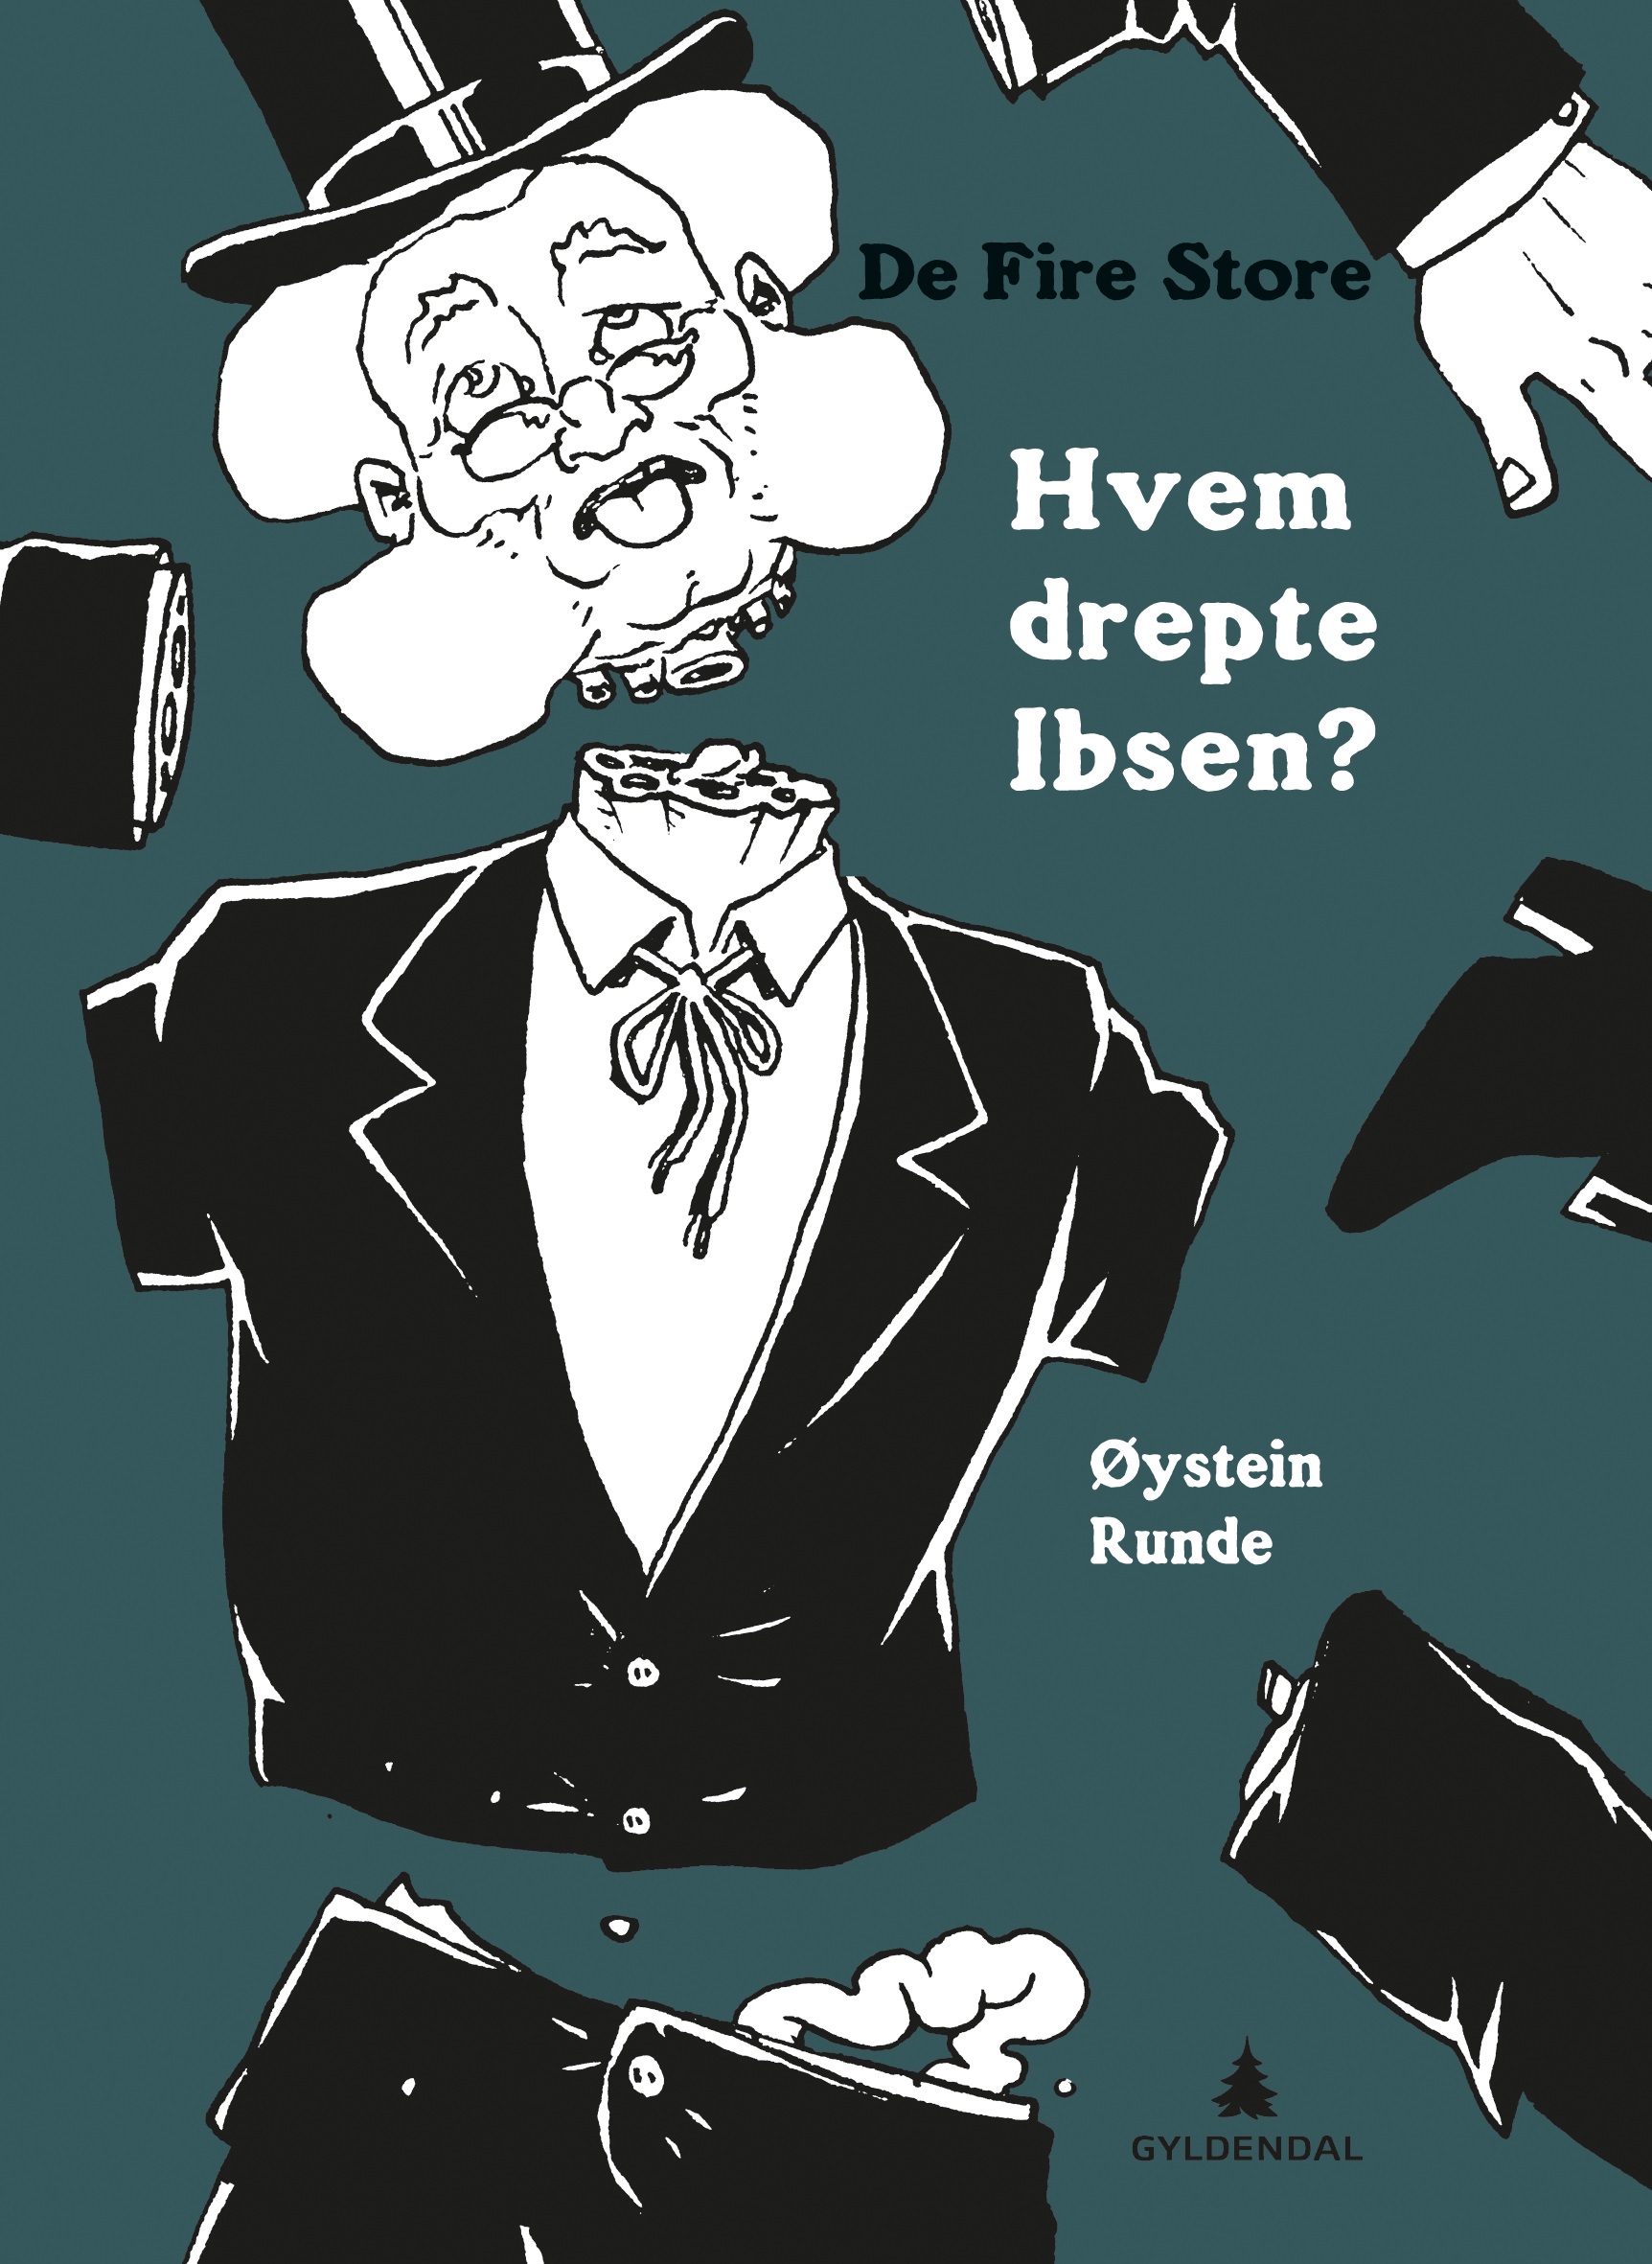 Hvem-drepte-Ibsen-_Fotokreditering-Gyldendal-2